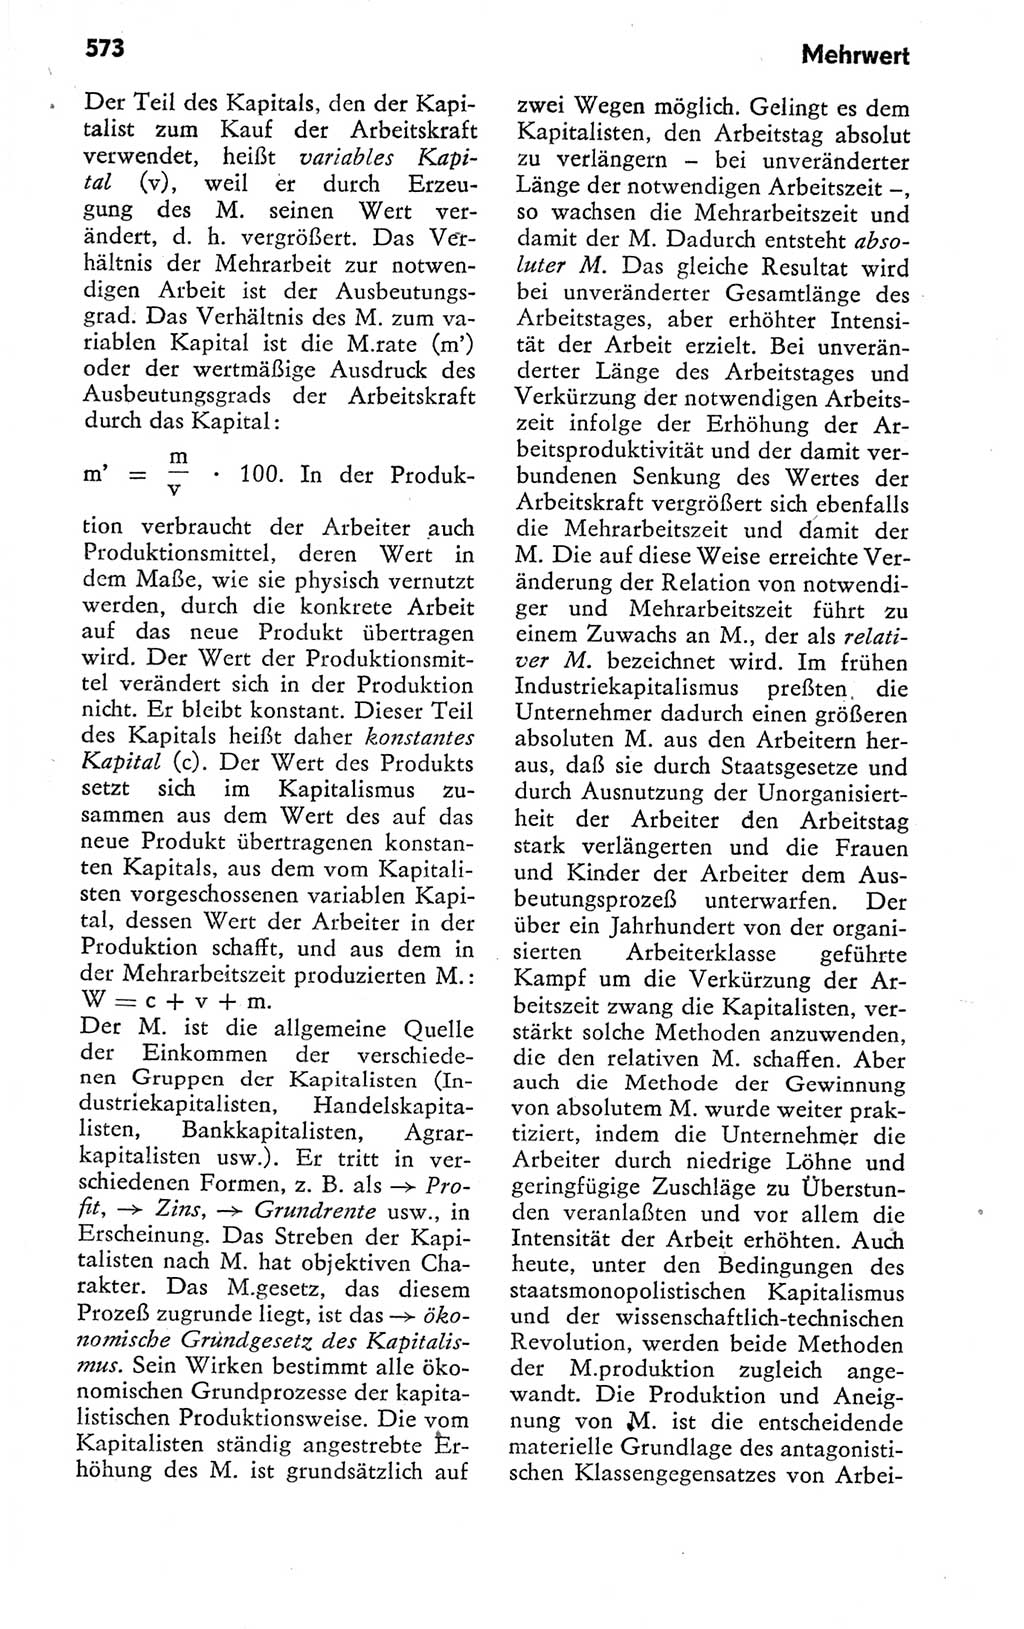 Kleines politisches Wörterbuch [Deutsche Demokratische Republik (DDR)] 1978, Seite 573 (Kl. pol. Wb. DDR 1978, S. 573)